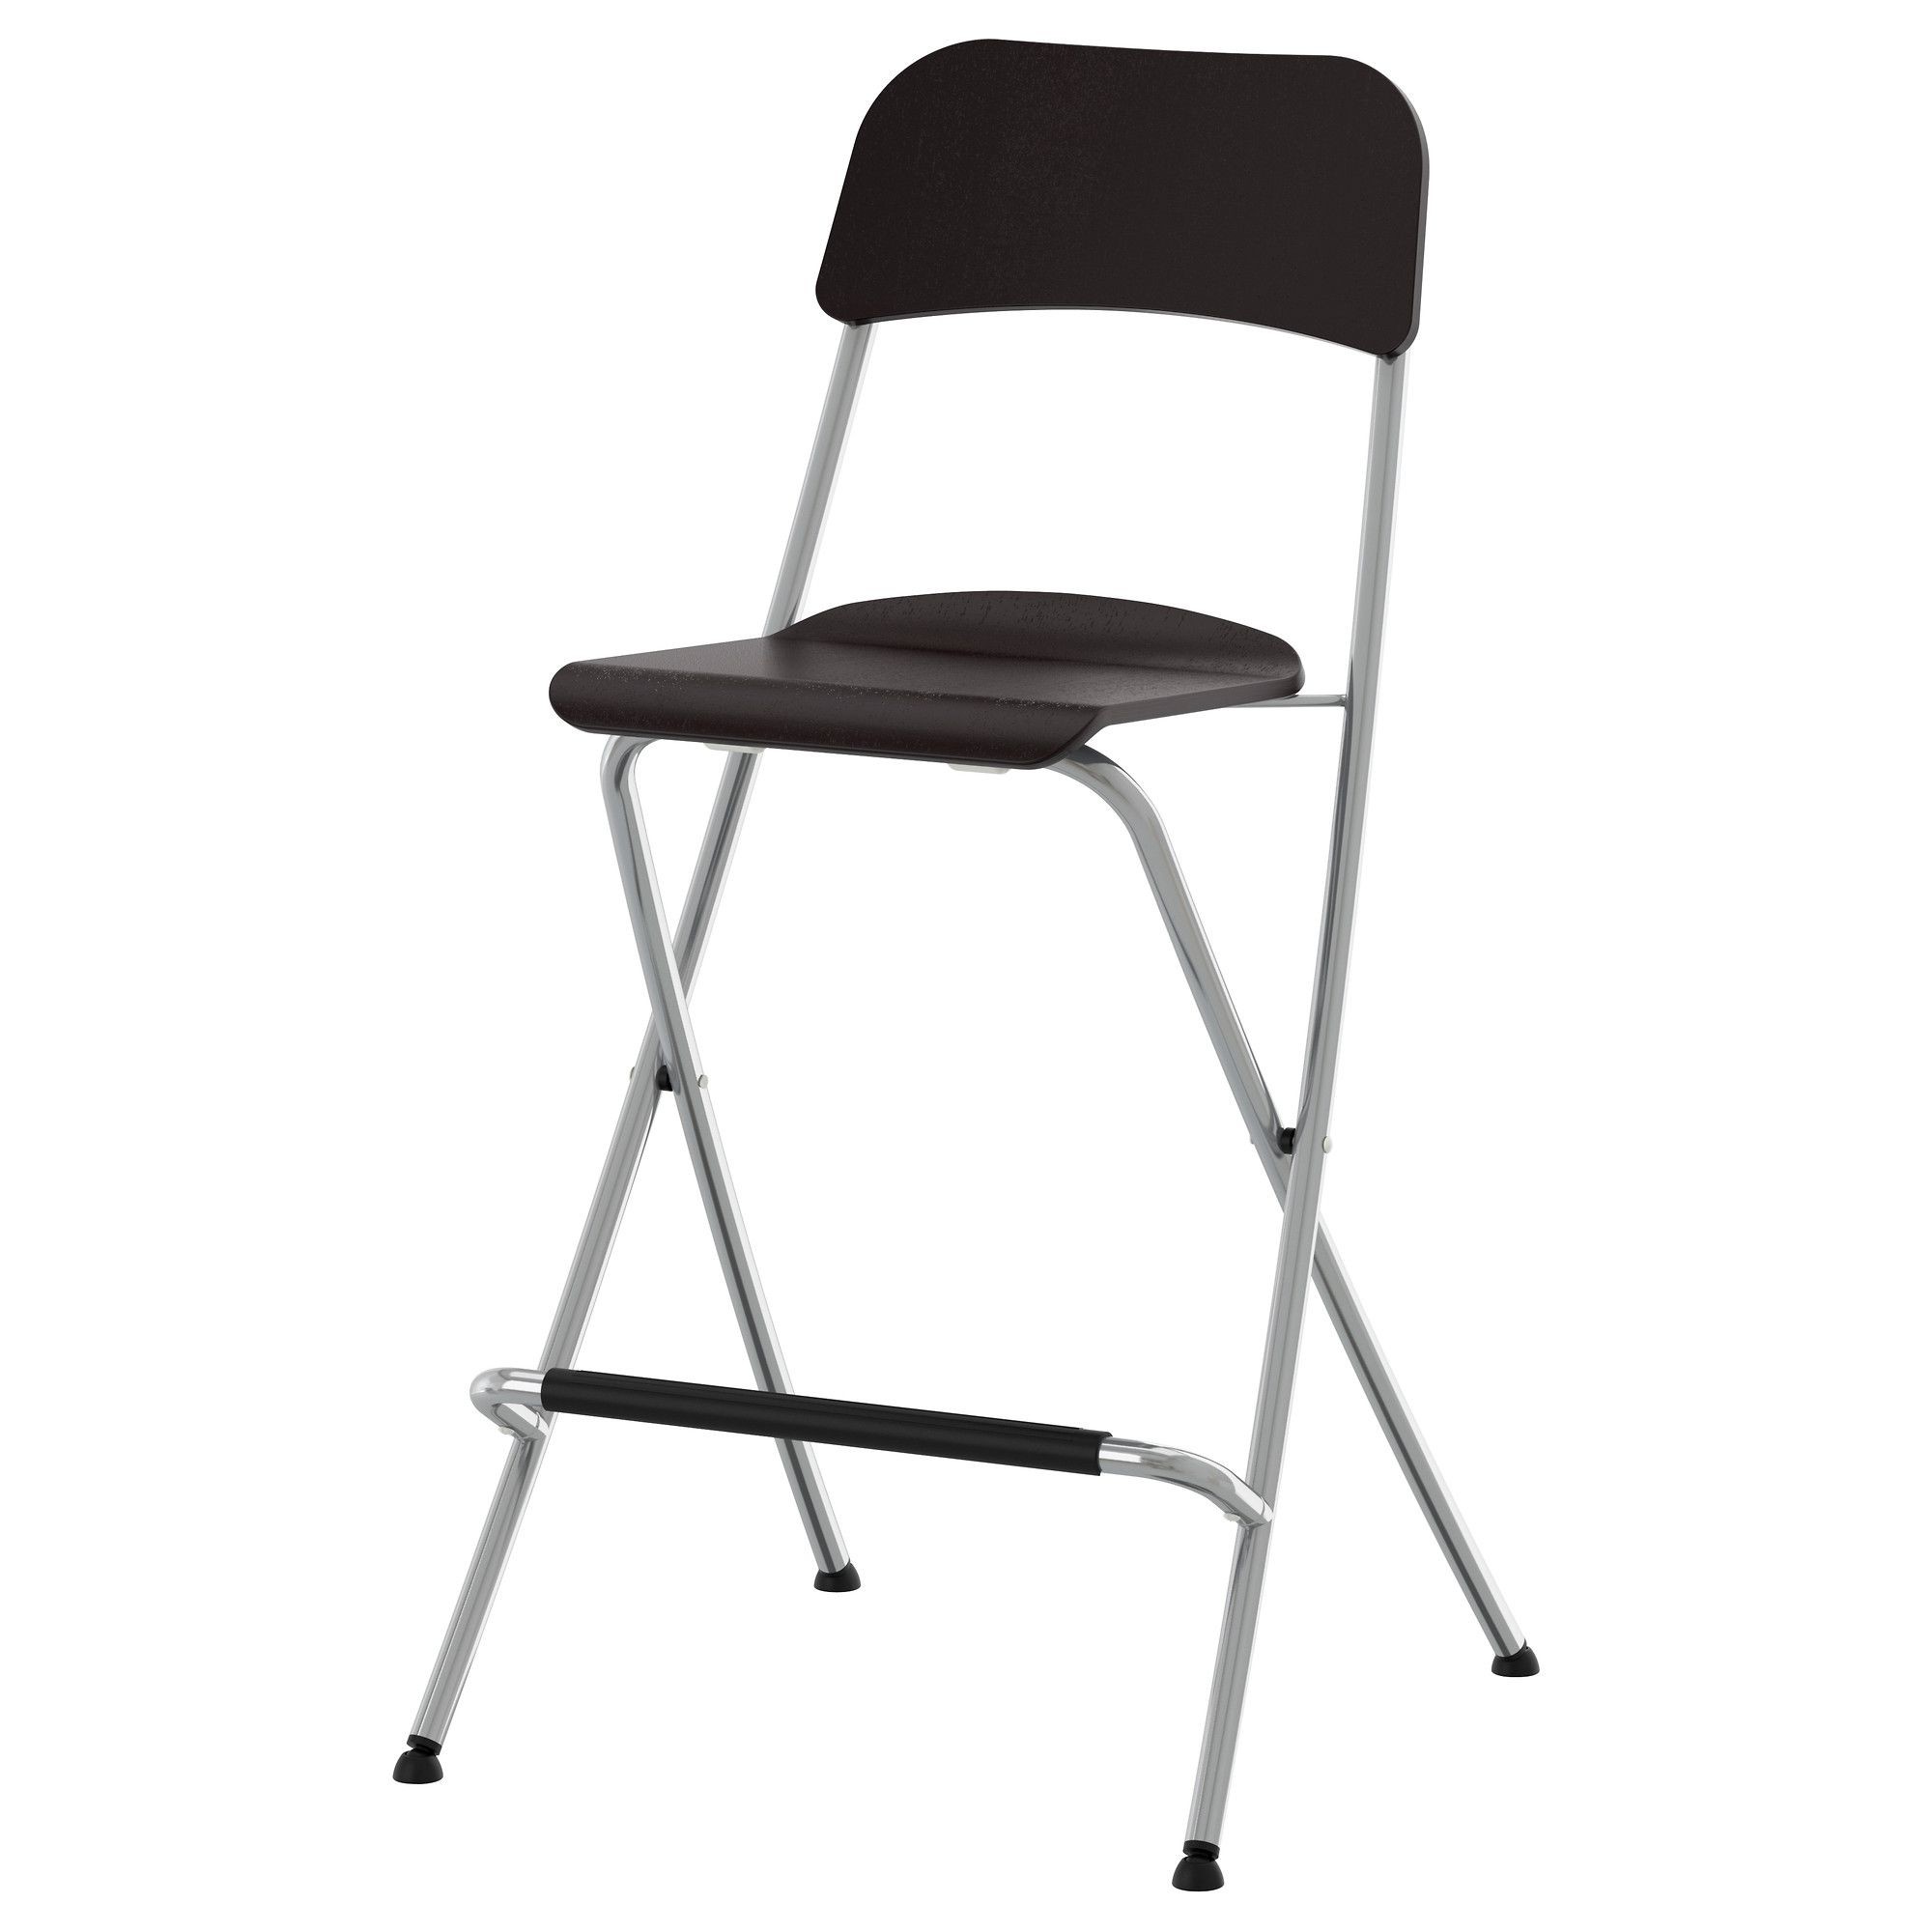 Folding stool with back